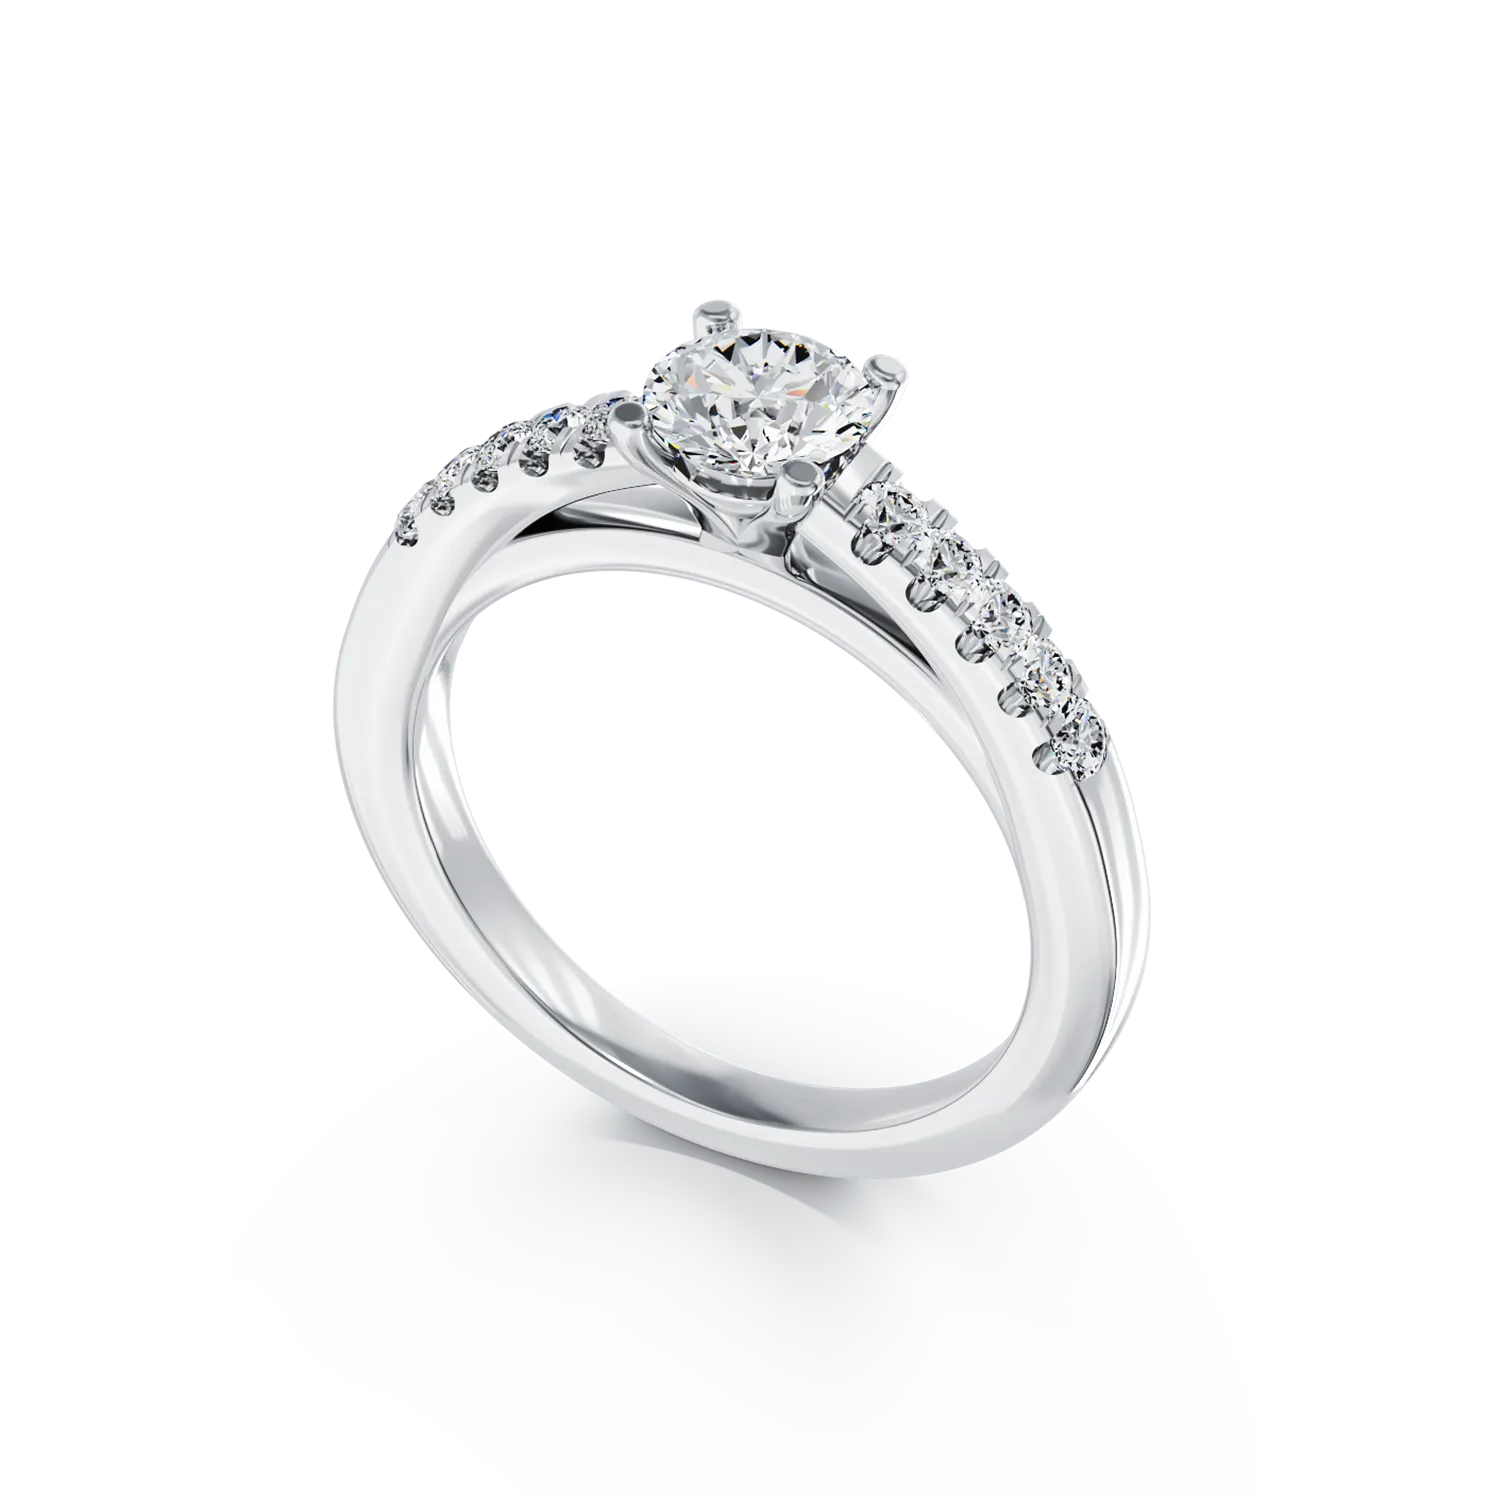 Eljegyzési gyűrű 18K-os fehér aranyból 0,51ct gyémánttal és 0,13ct gyémántokkal. Gramm: 3,18